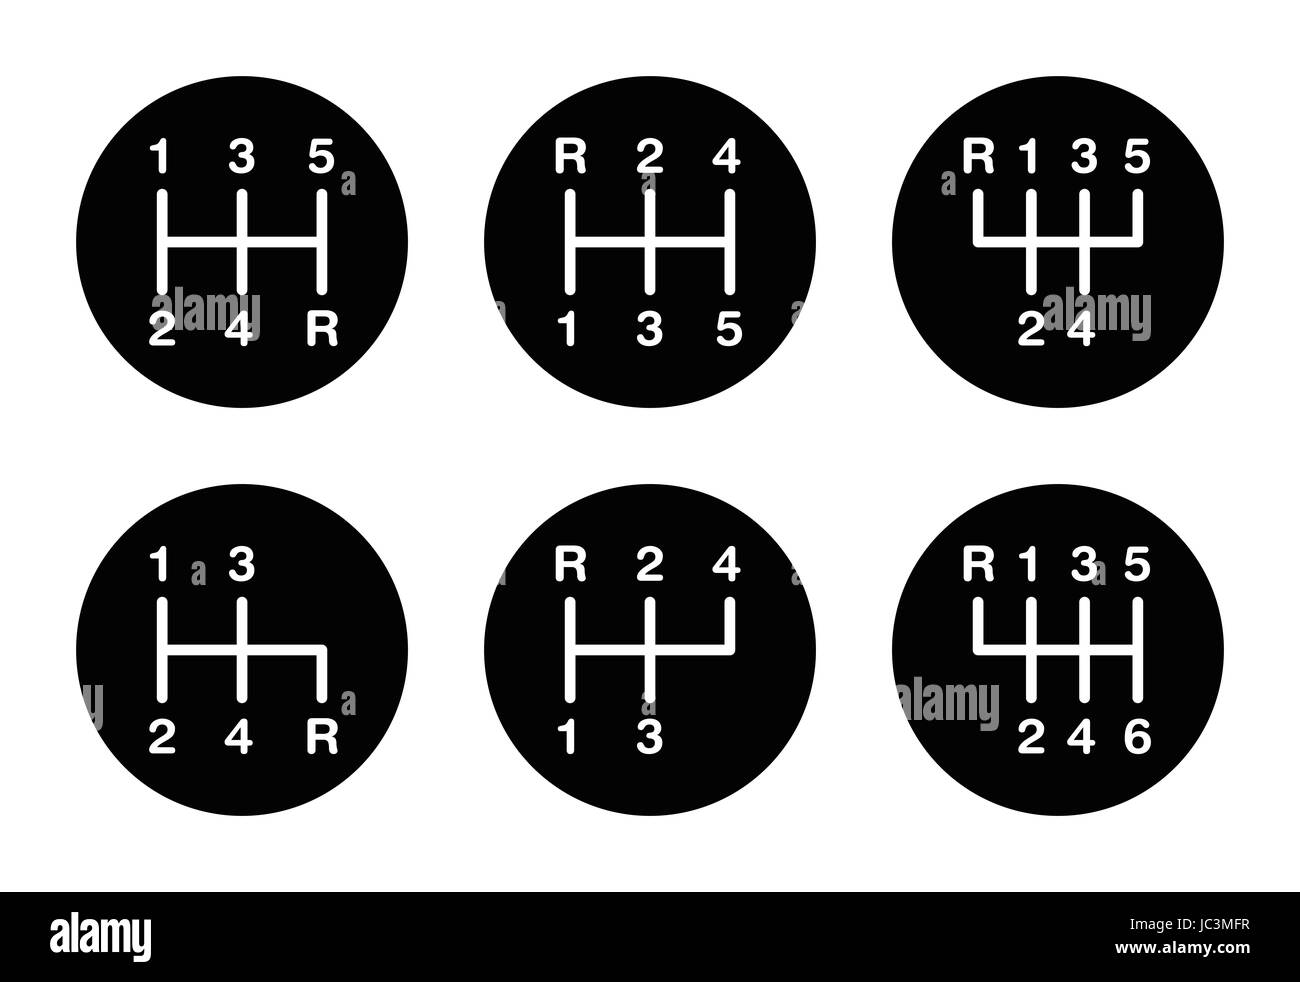 Sechs verschiedene Getriebe Schalthebel Muster. Positionen für den Schalthebel auch Schaltung oder Schalthebel genannt. Fünf-Gang und 6-Gang-Muster auf einen Knopf. Stockfoto